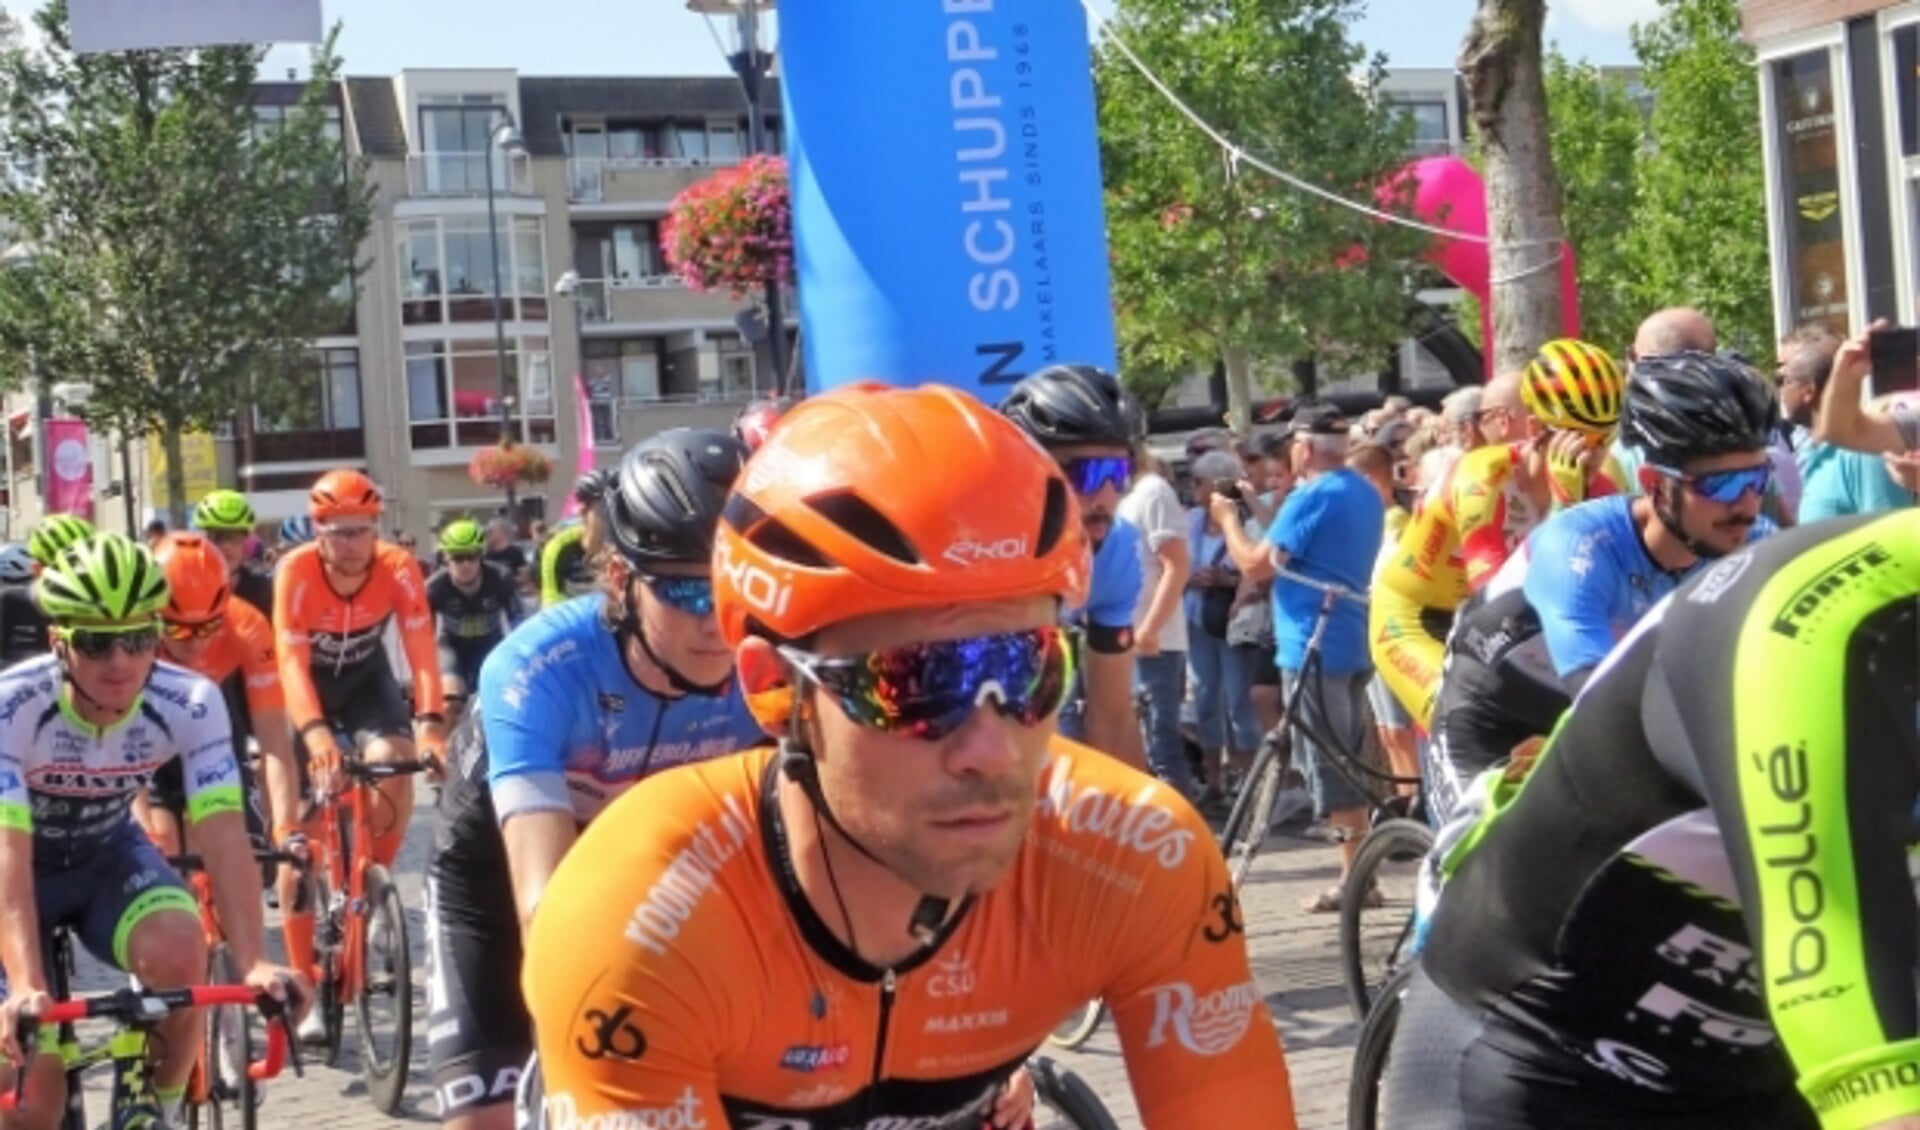 De wielerkoers Veenendaal - Veenendaal (archieffoto van de start van de editie 2019) staat op de wielerkalender 2021 geprogrammeerd op 21 en 22 mei. (Foto: Dick Martens)